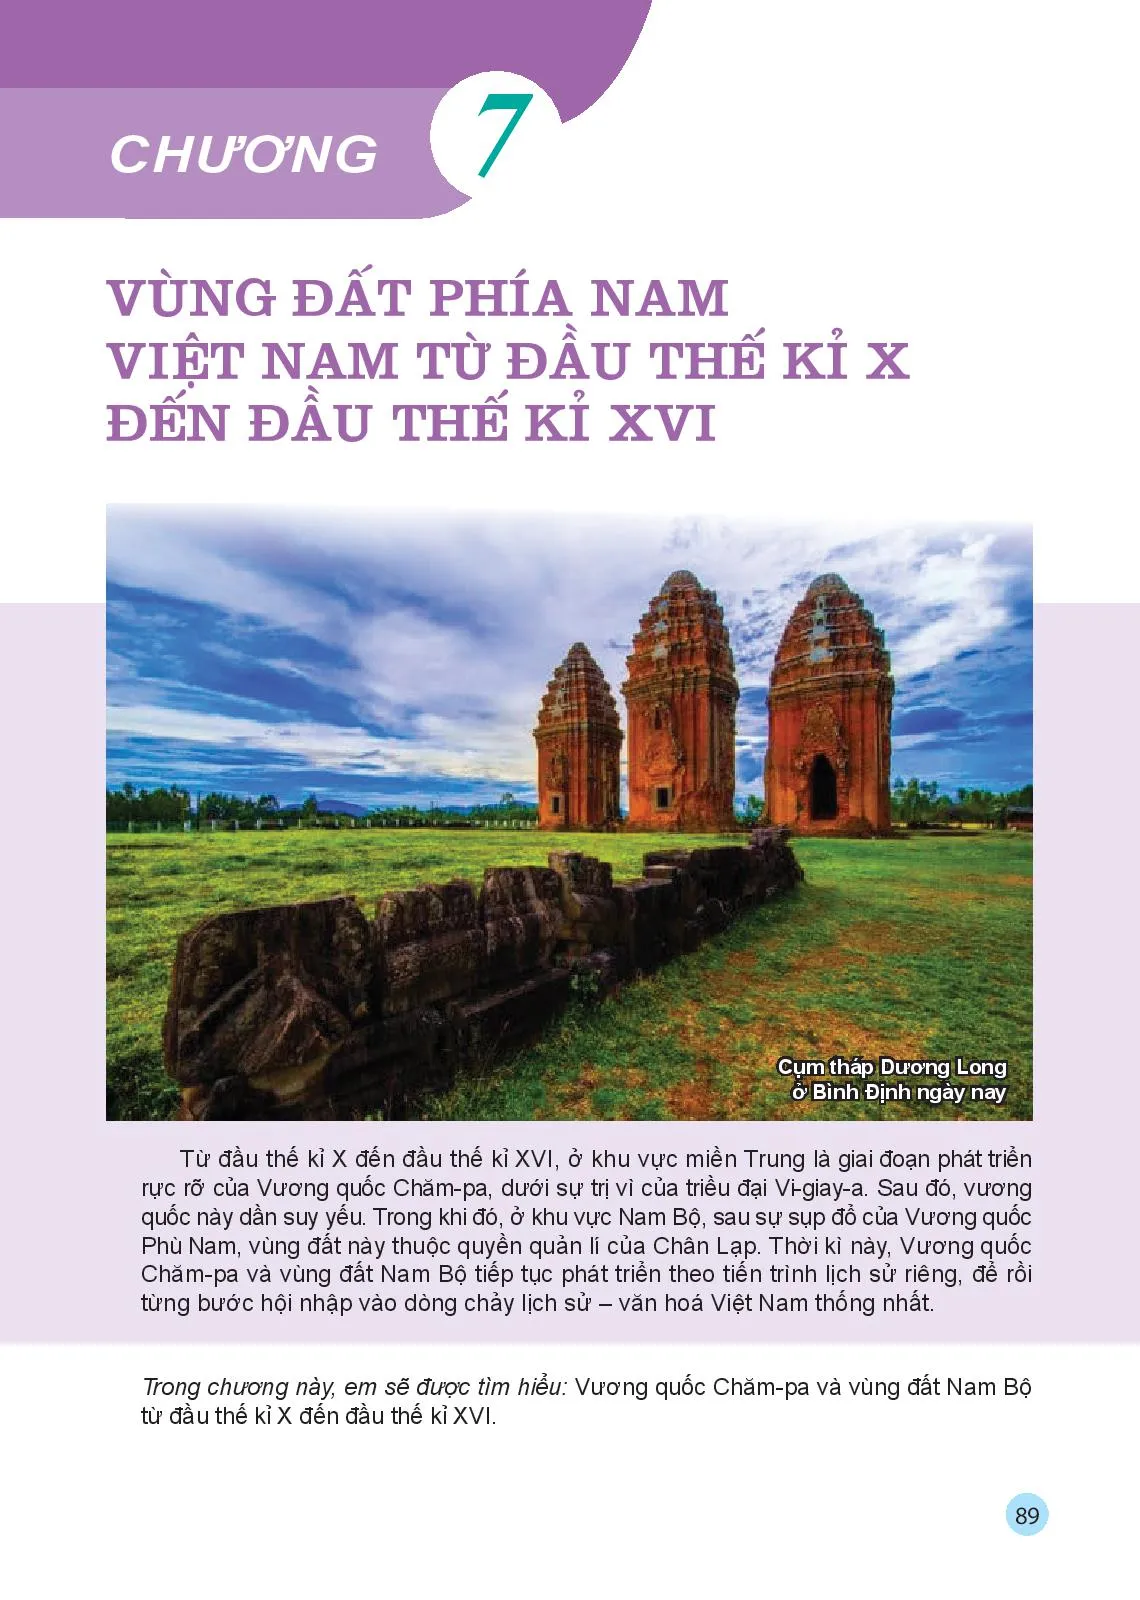 Bài 17 Đại Việt thời Lê sơ (1428-1527)